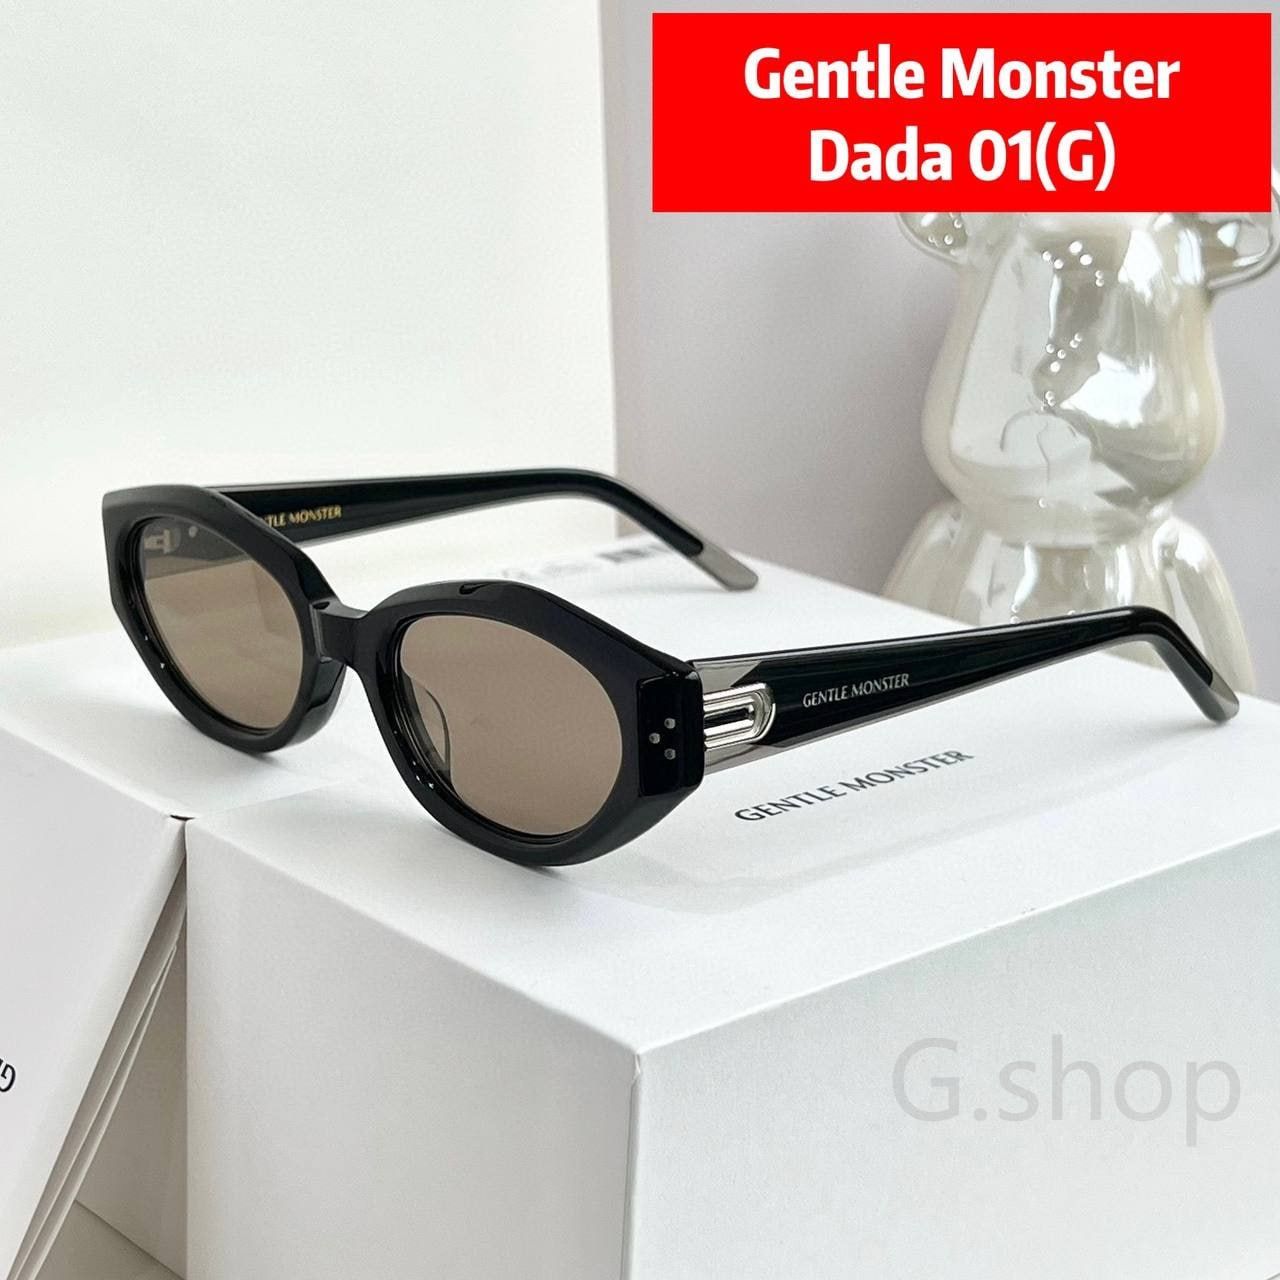 Gentle Monster Dada 01(G) サングラス - メルカリ